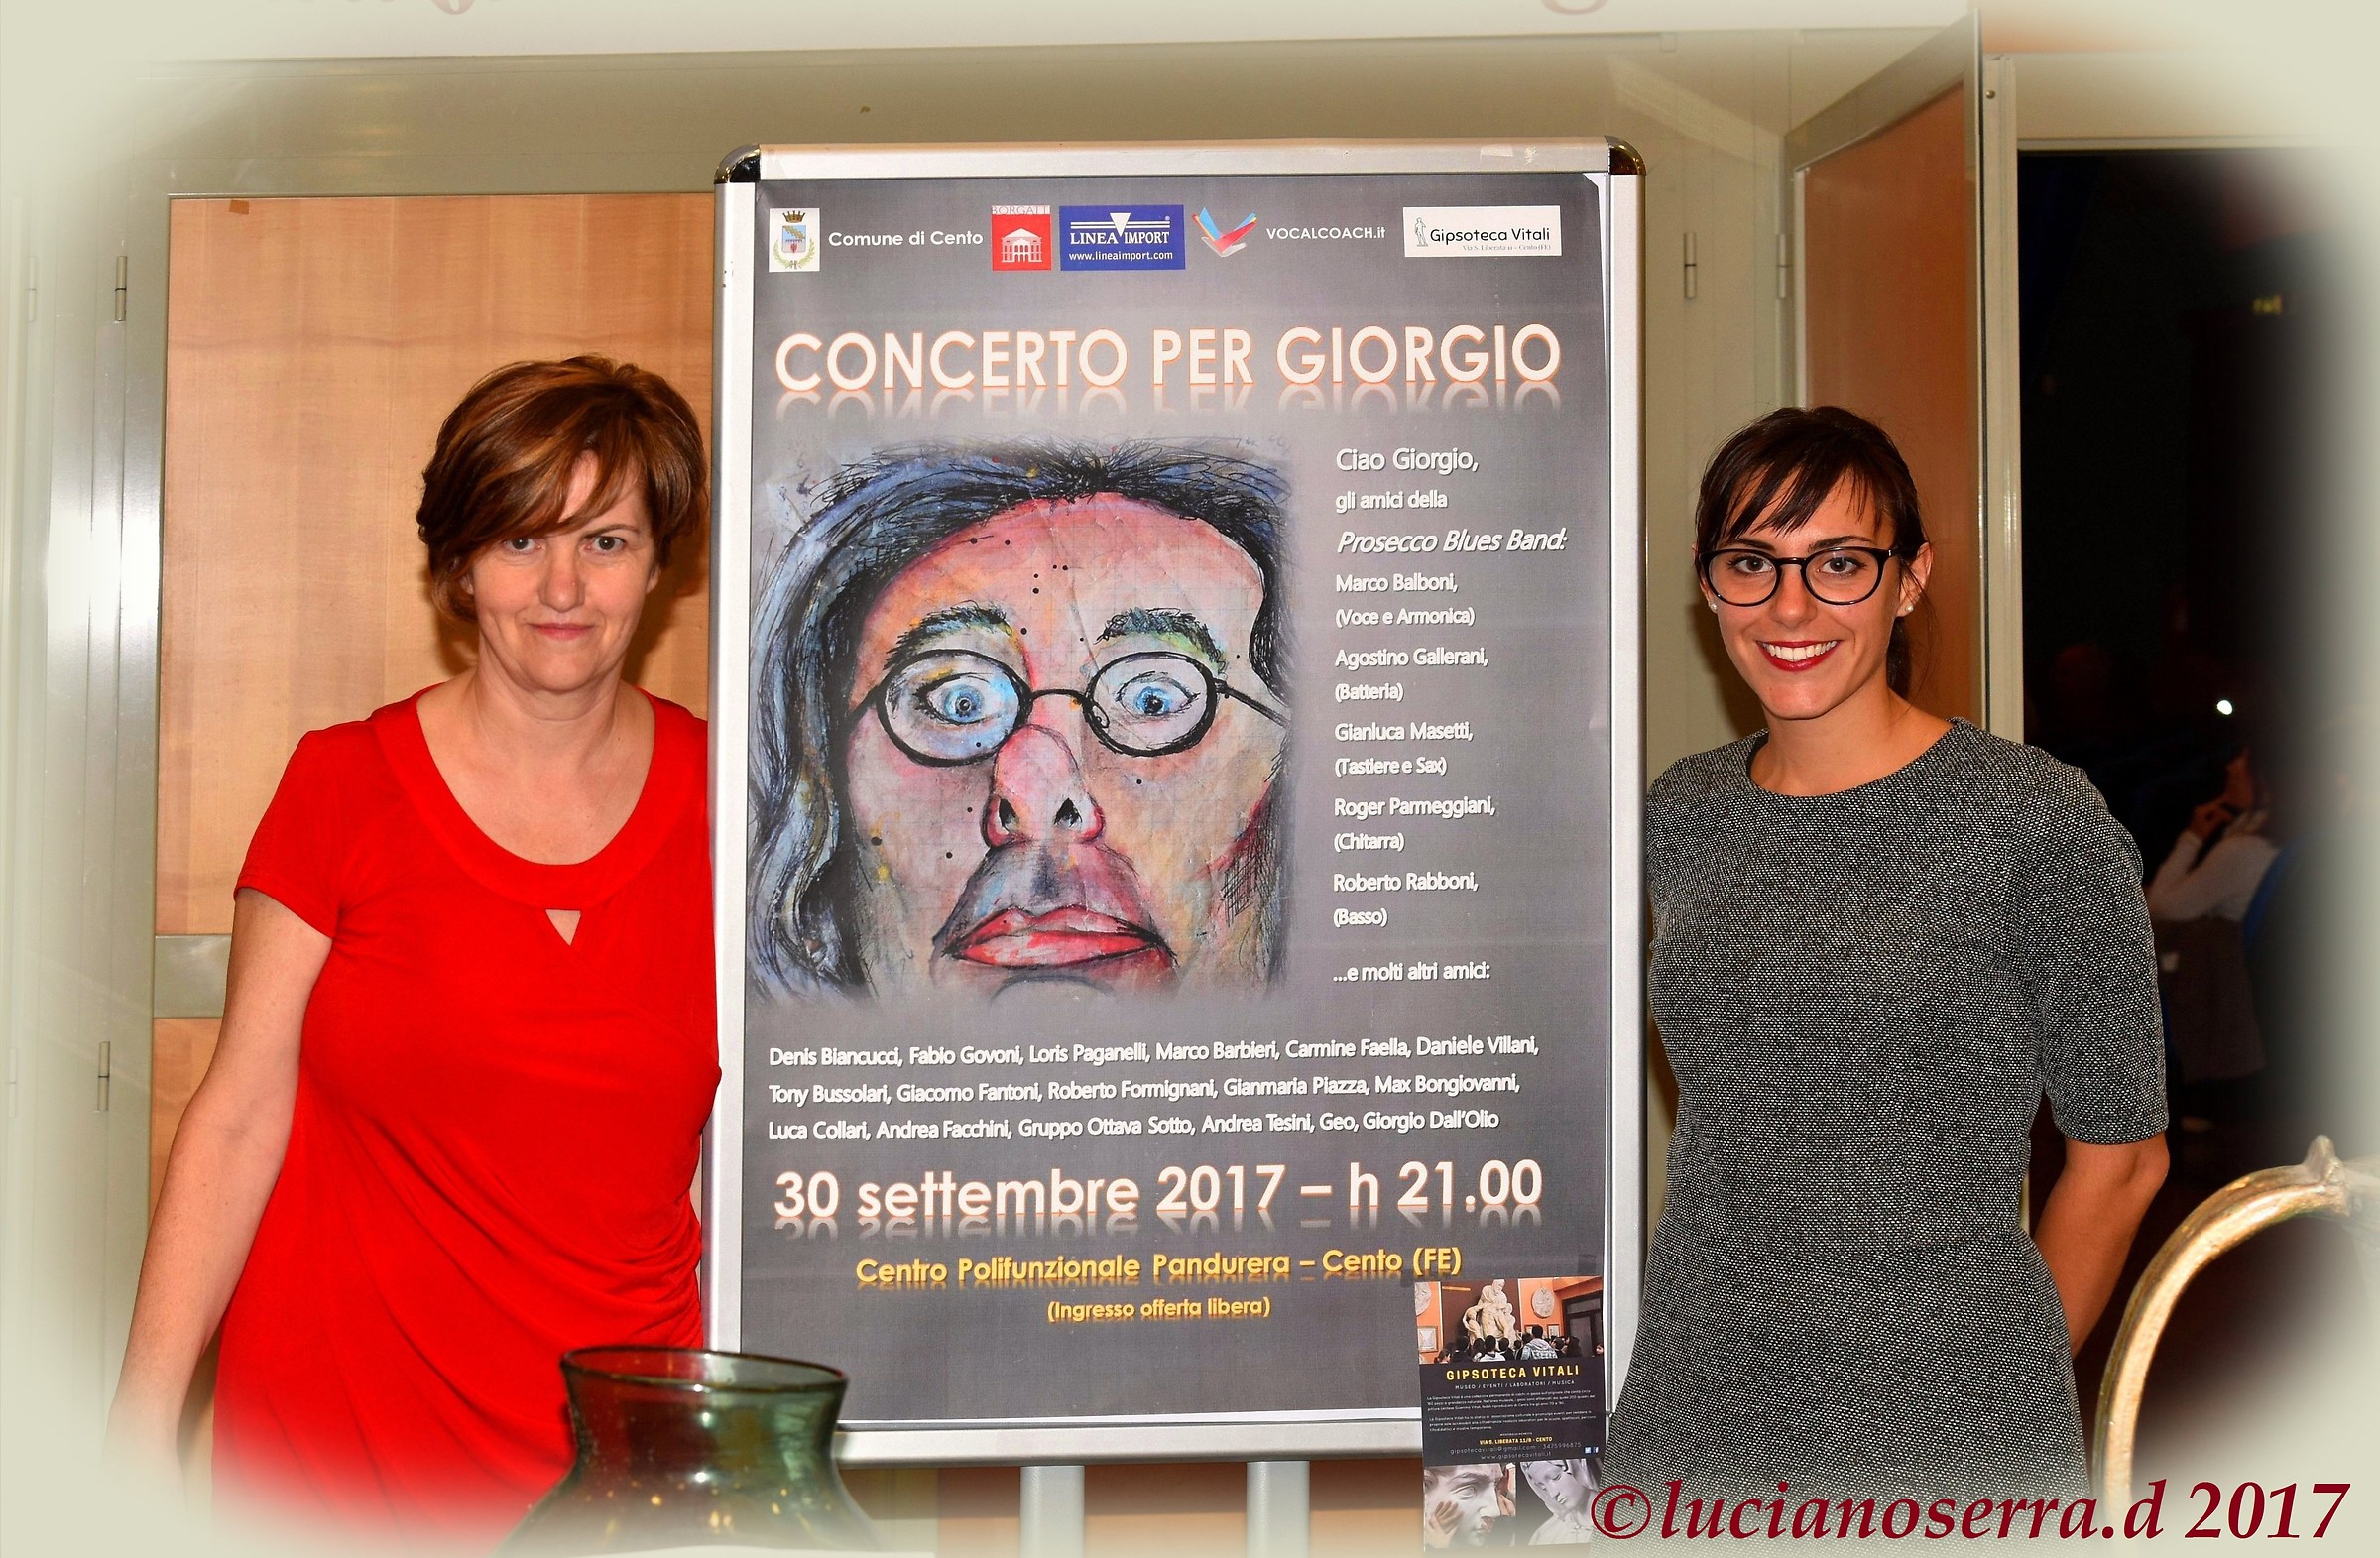 Concerto for Giorgio...